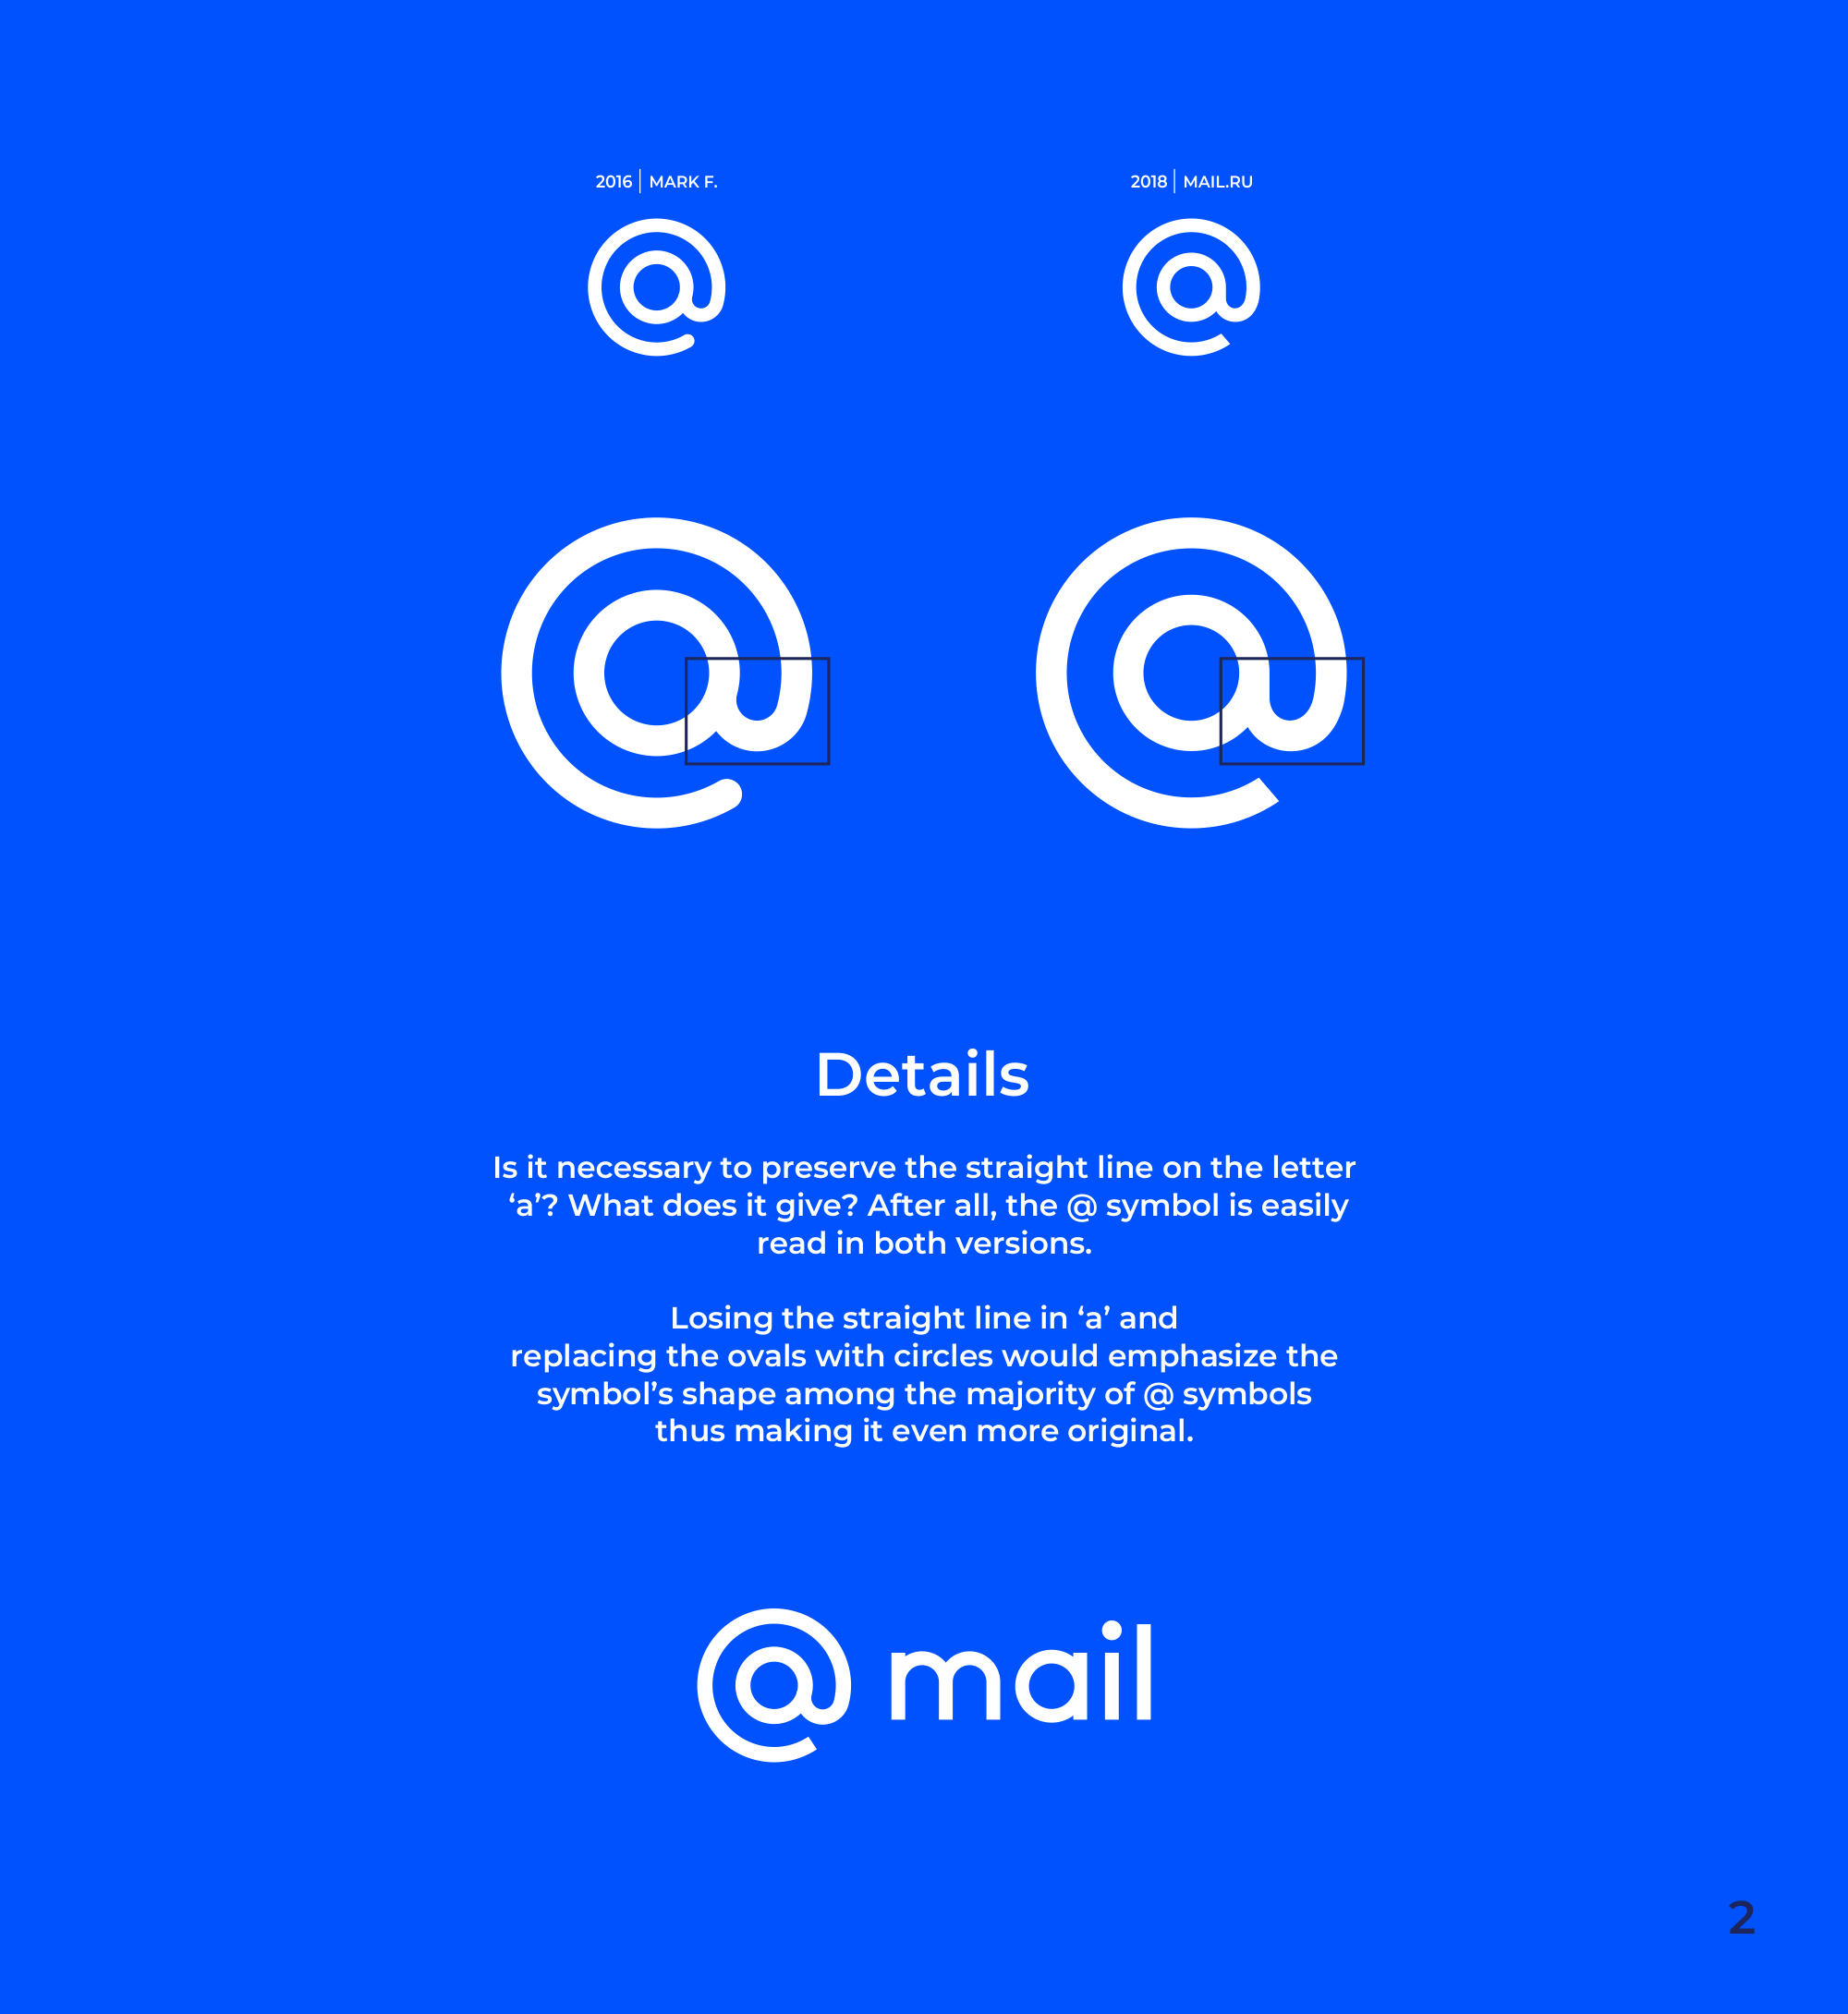 Mail.ru Logo - mail.ru case – Professional Logo Design